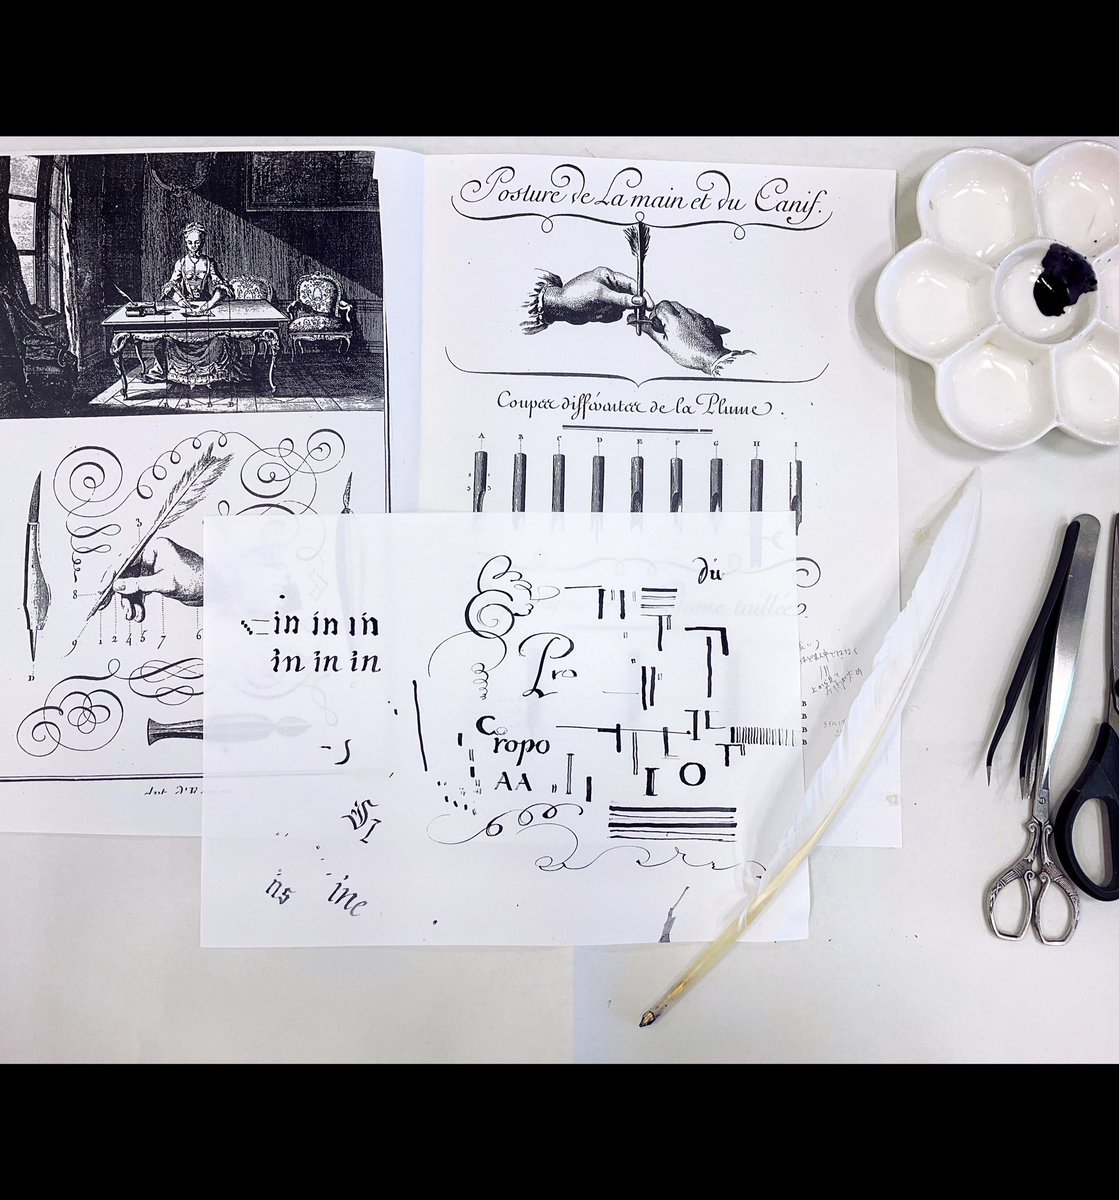 「カルチャースクールで、羽根ペンの作り方を勉強してきました 」|Samille(さみぃゆ)のイラスト